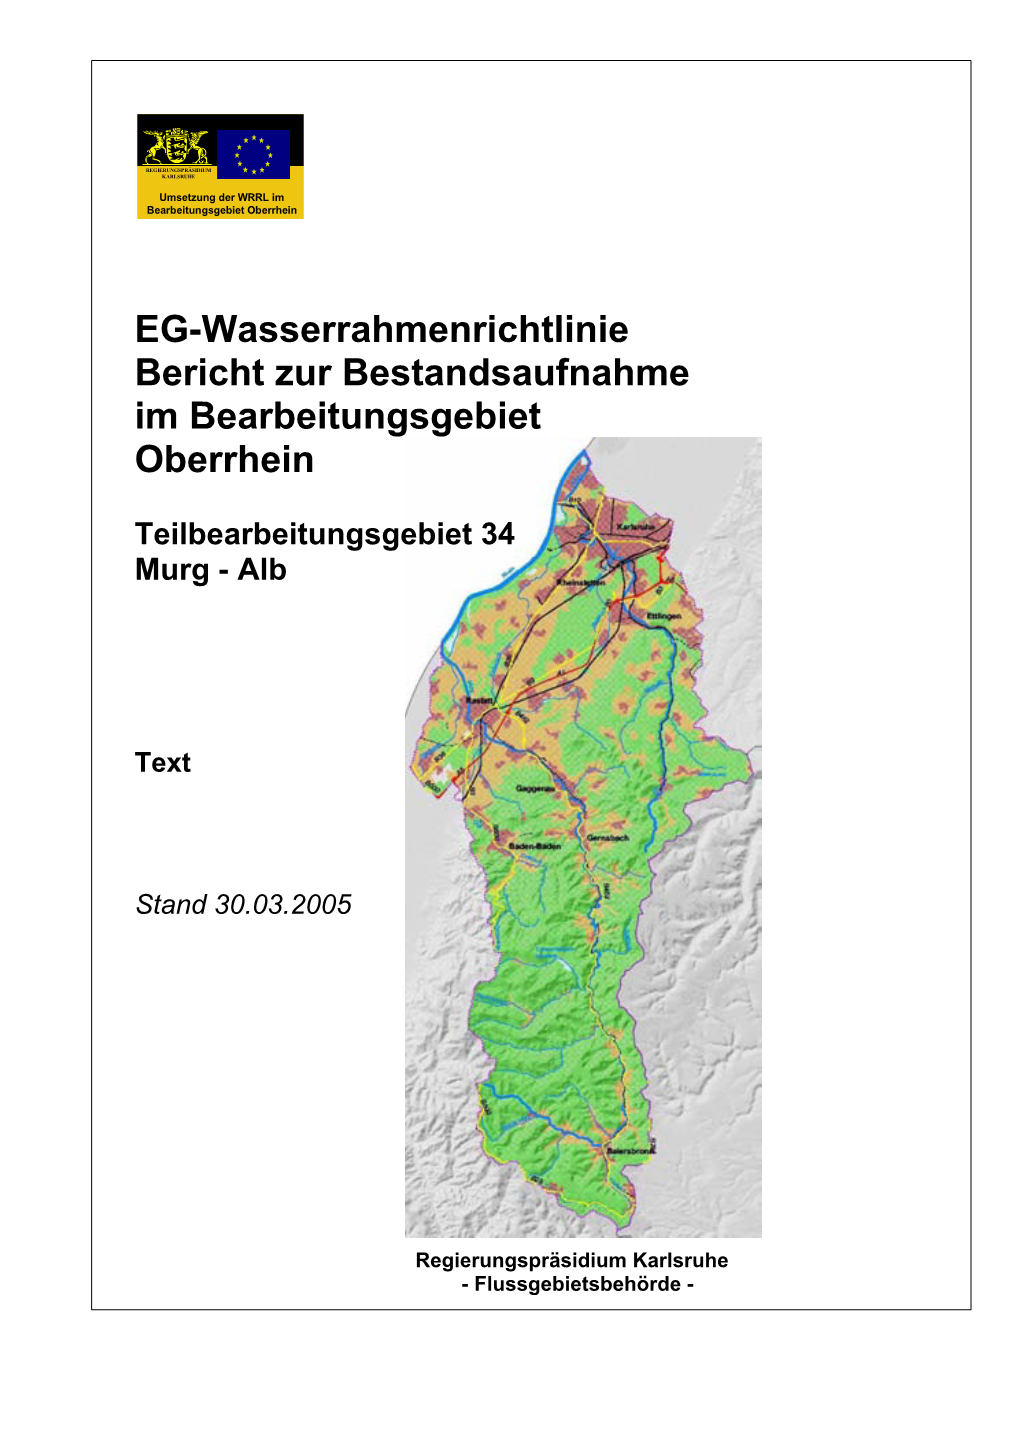 EG-Wasserrahmenrichtlinie Bericht Zur Bestandsaufnahme Im Bearbeitungsgebiet Oberrhein